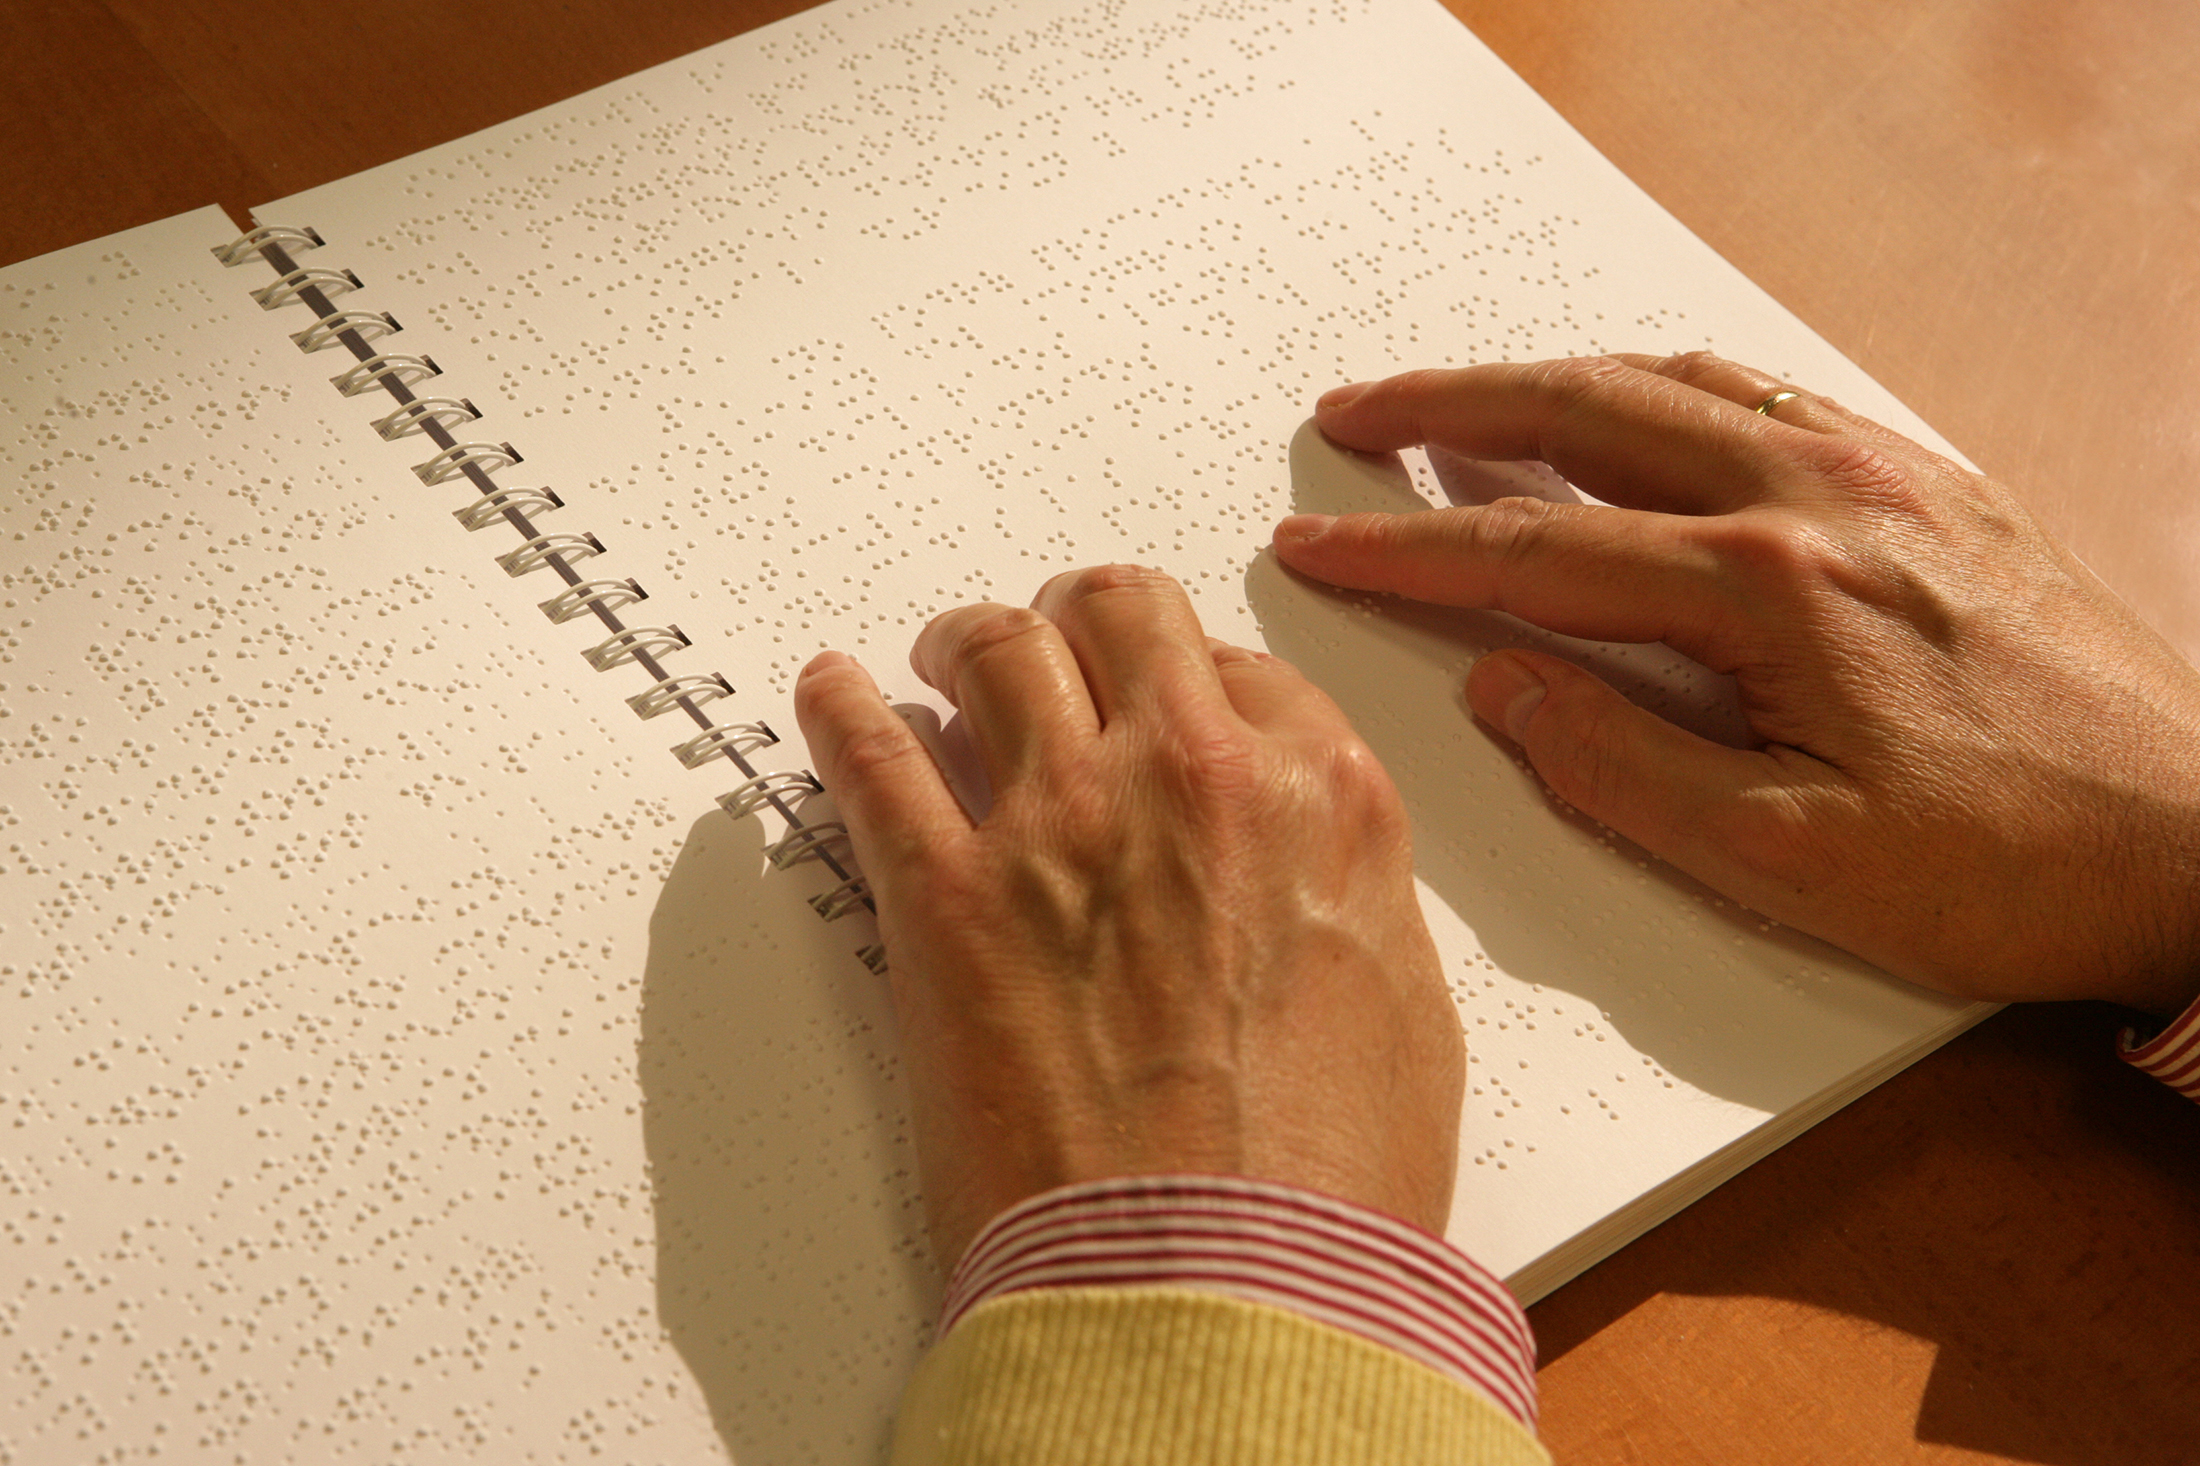 Las manos de una persona ciega leyendo un libro en braille